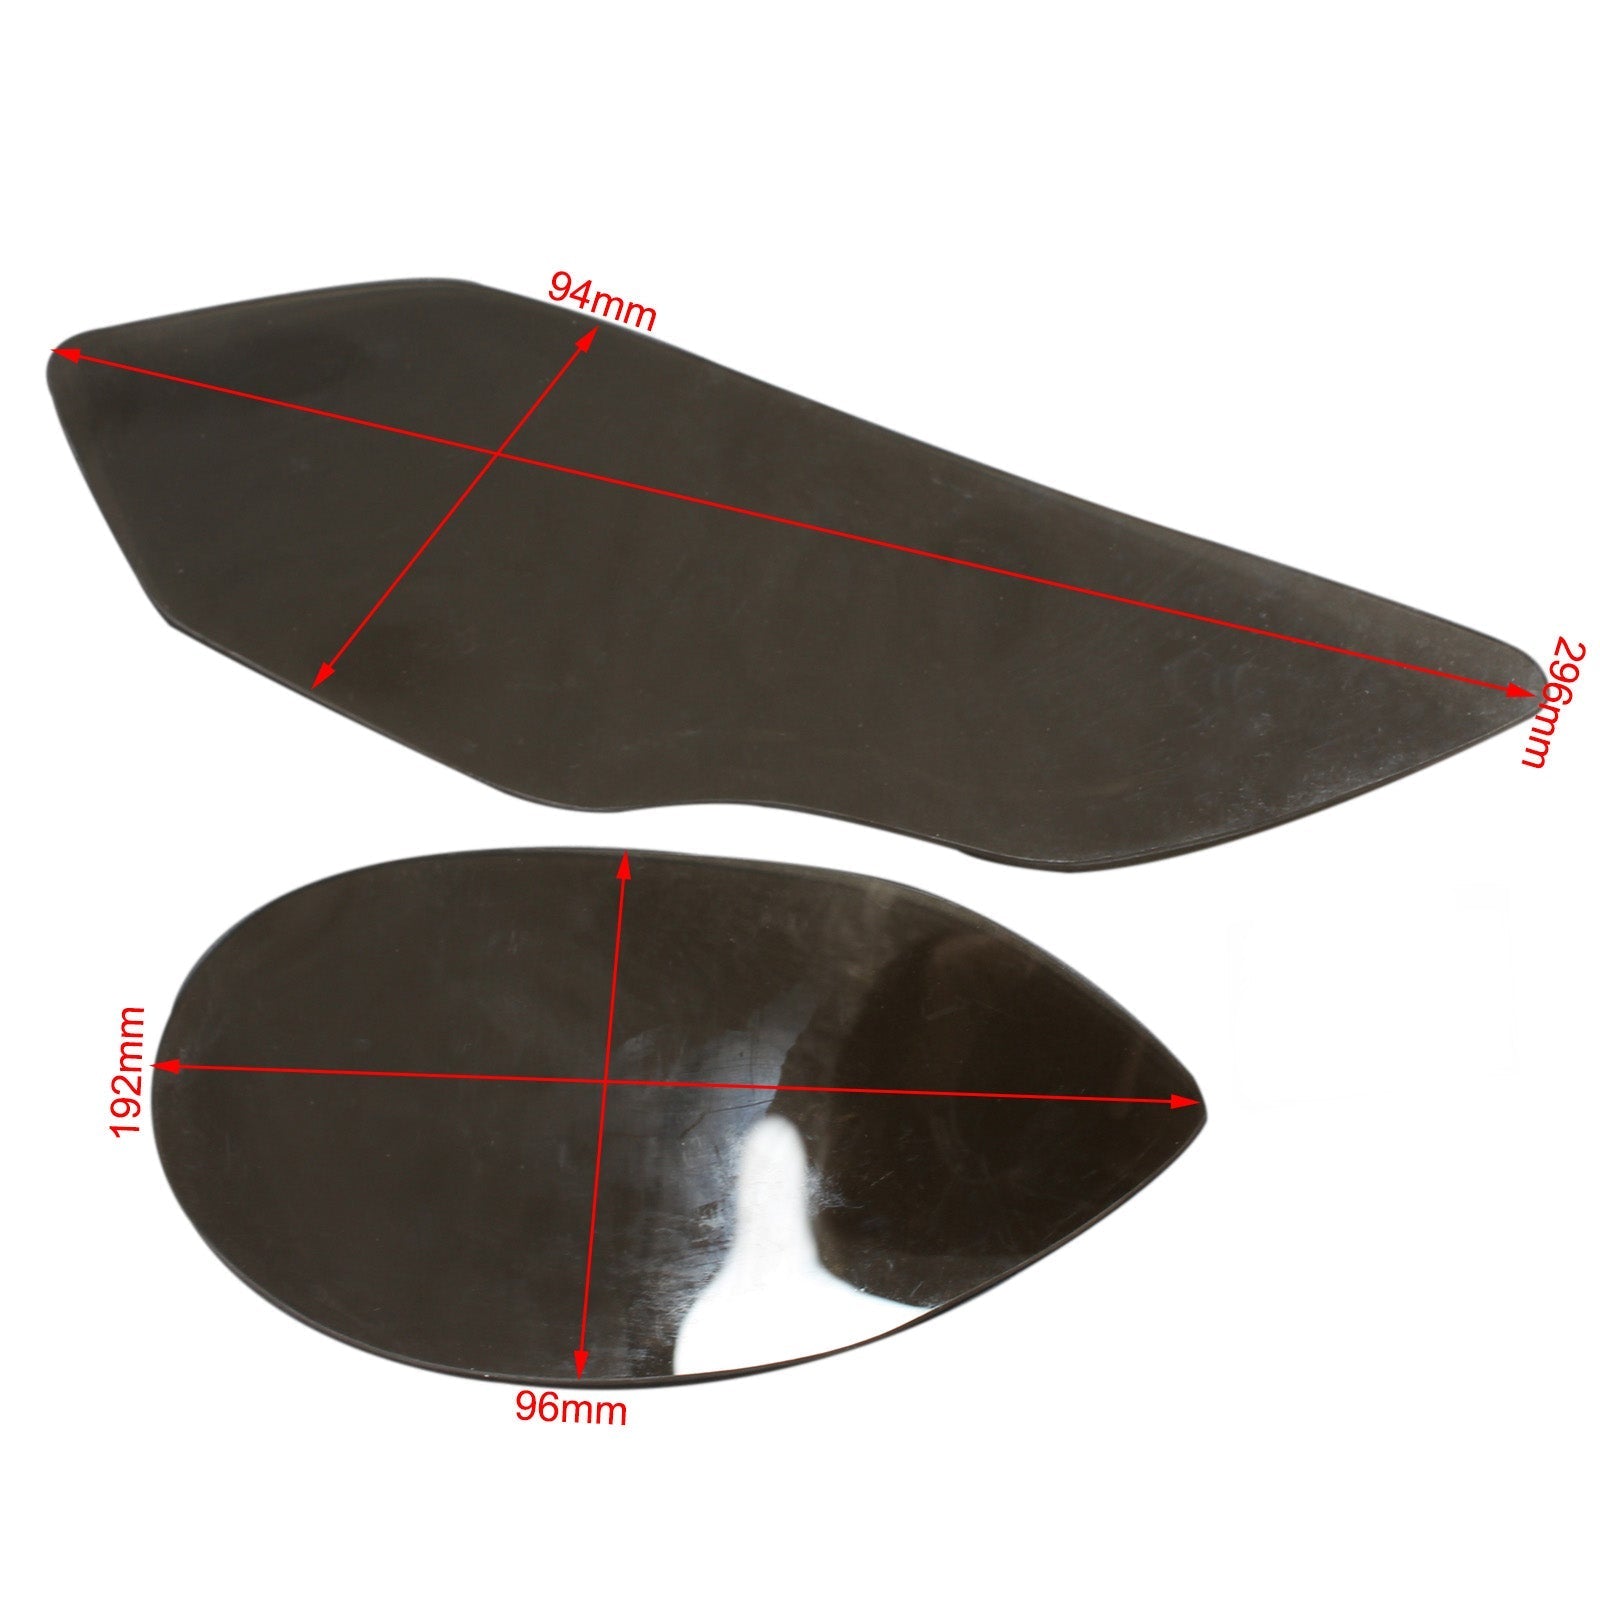 Lente della lampada anteriore Protezione della lente del faro adatta per Bmw S1000Rr 2015-2018 Fumo generico